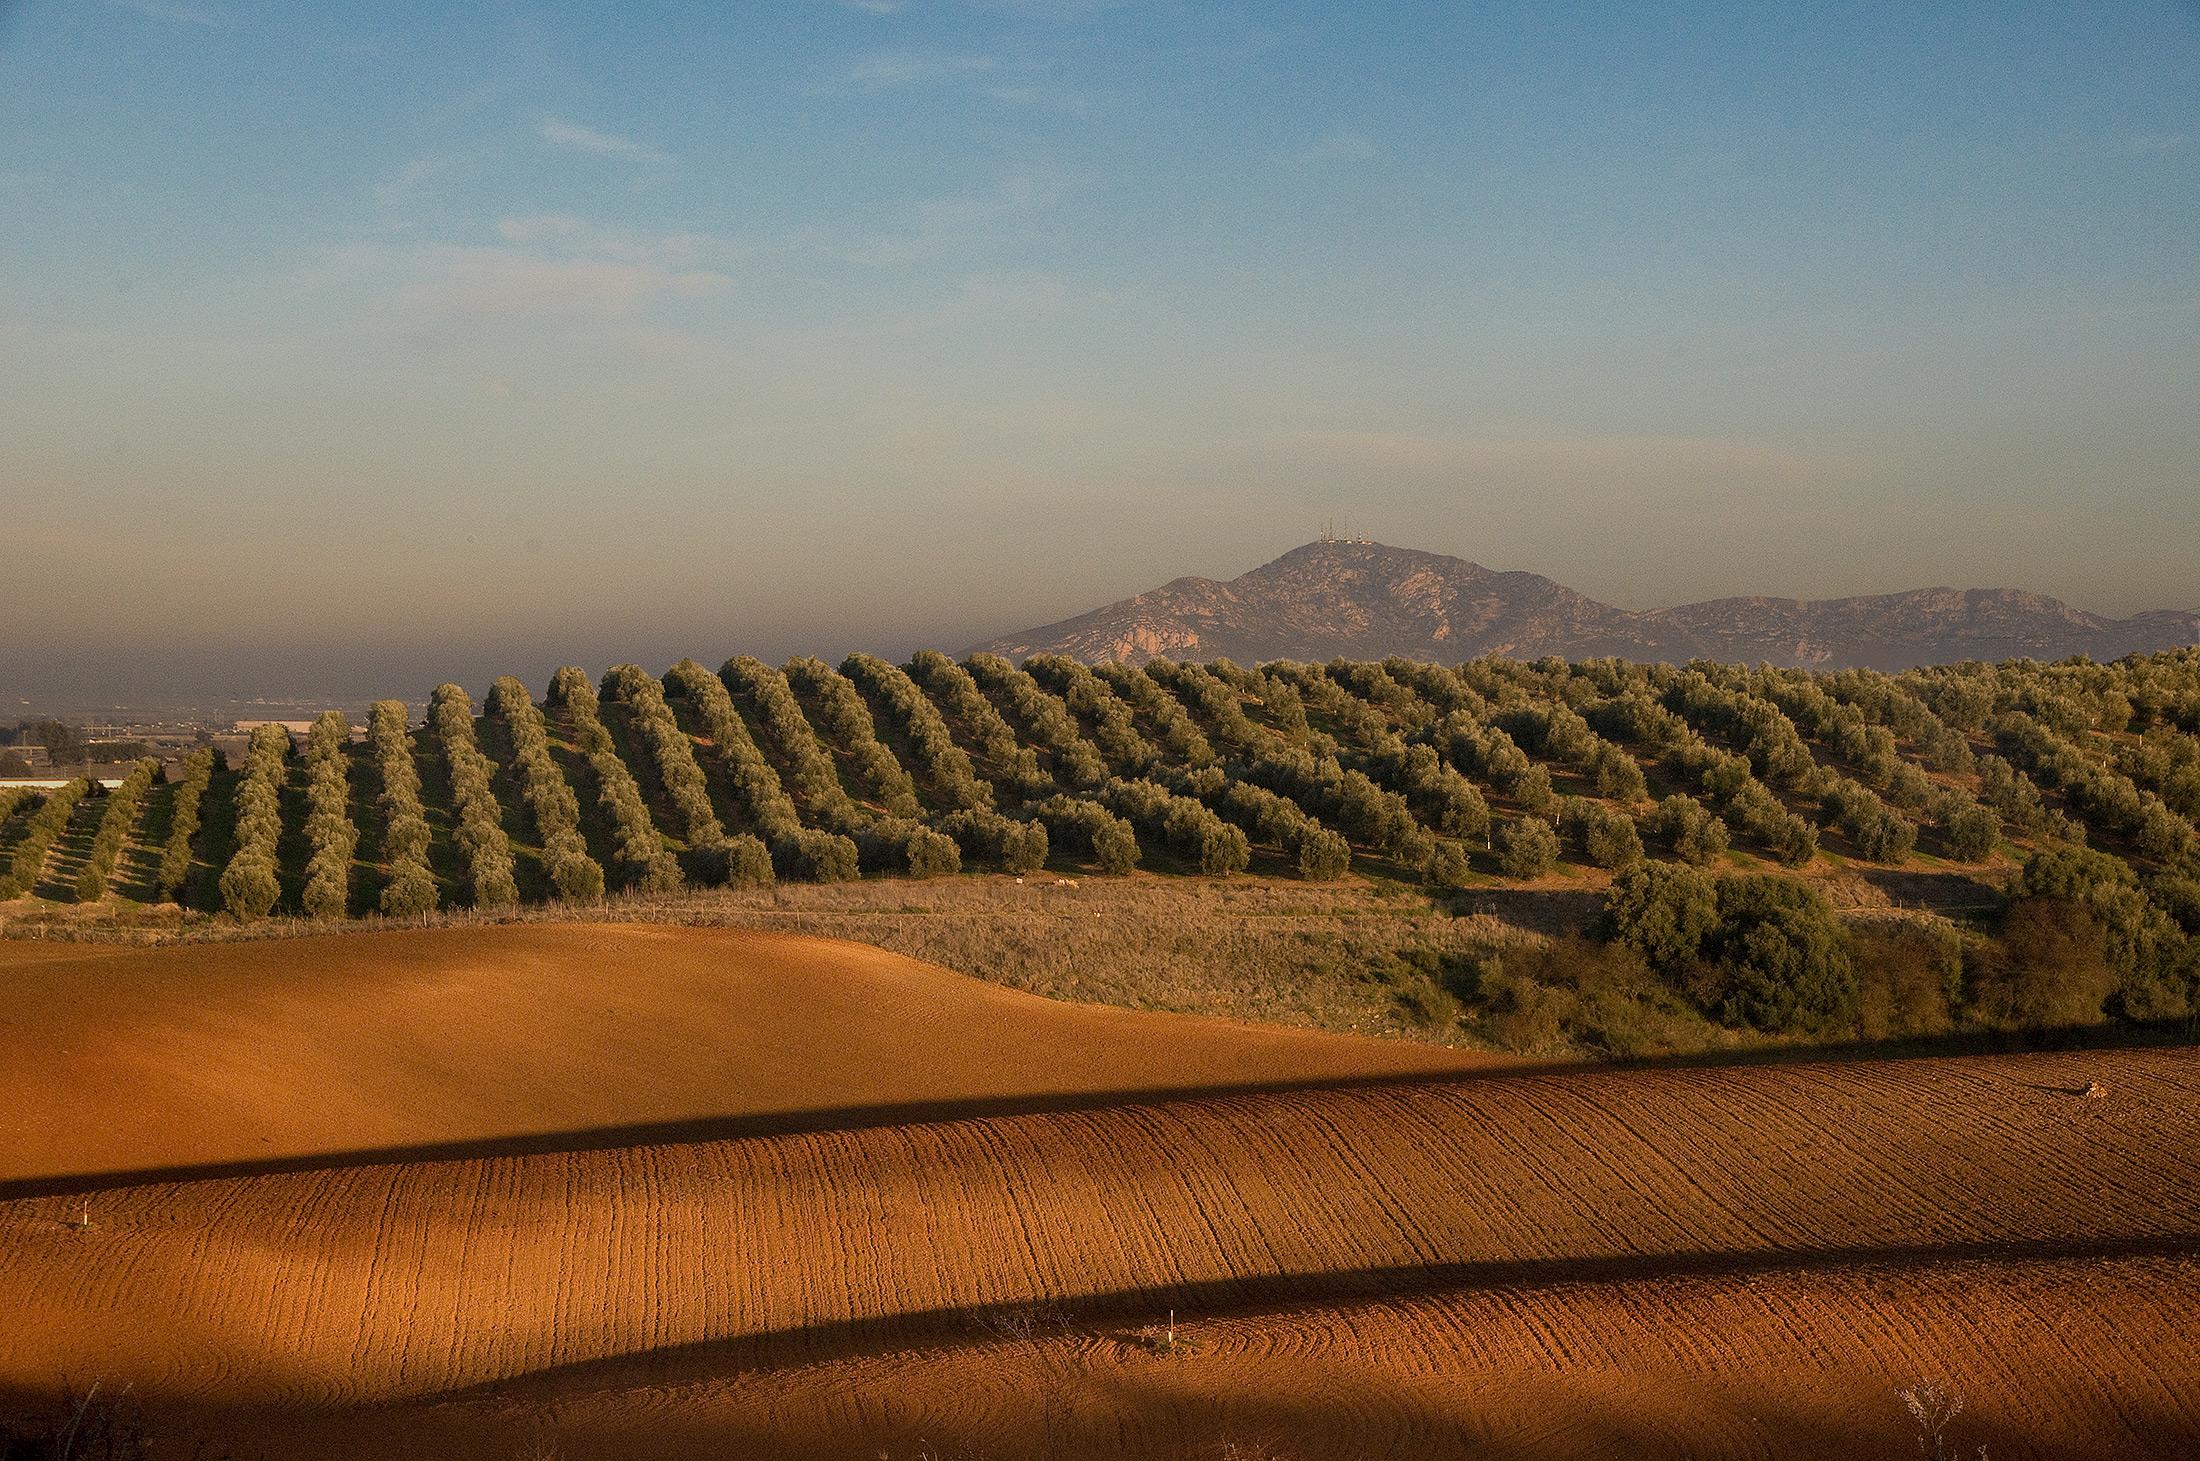 <p>La familia Álvarez de Toledo ha sido propietaria de la finca Perales y ha producido aceite de oliva desde hace más de 500 años. Alrededor de 200 hectáreas de la finca están dedicadas al olivar y almazara.<span> </span></p>